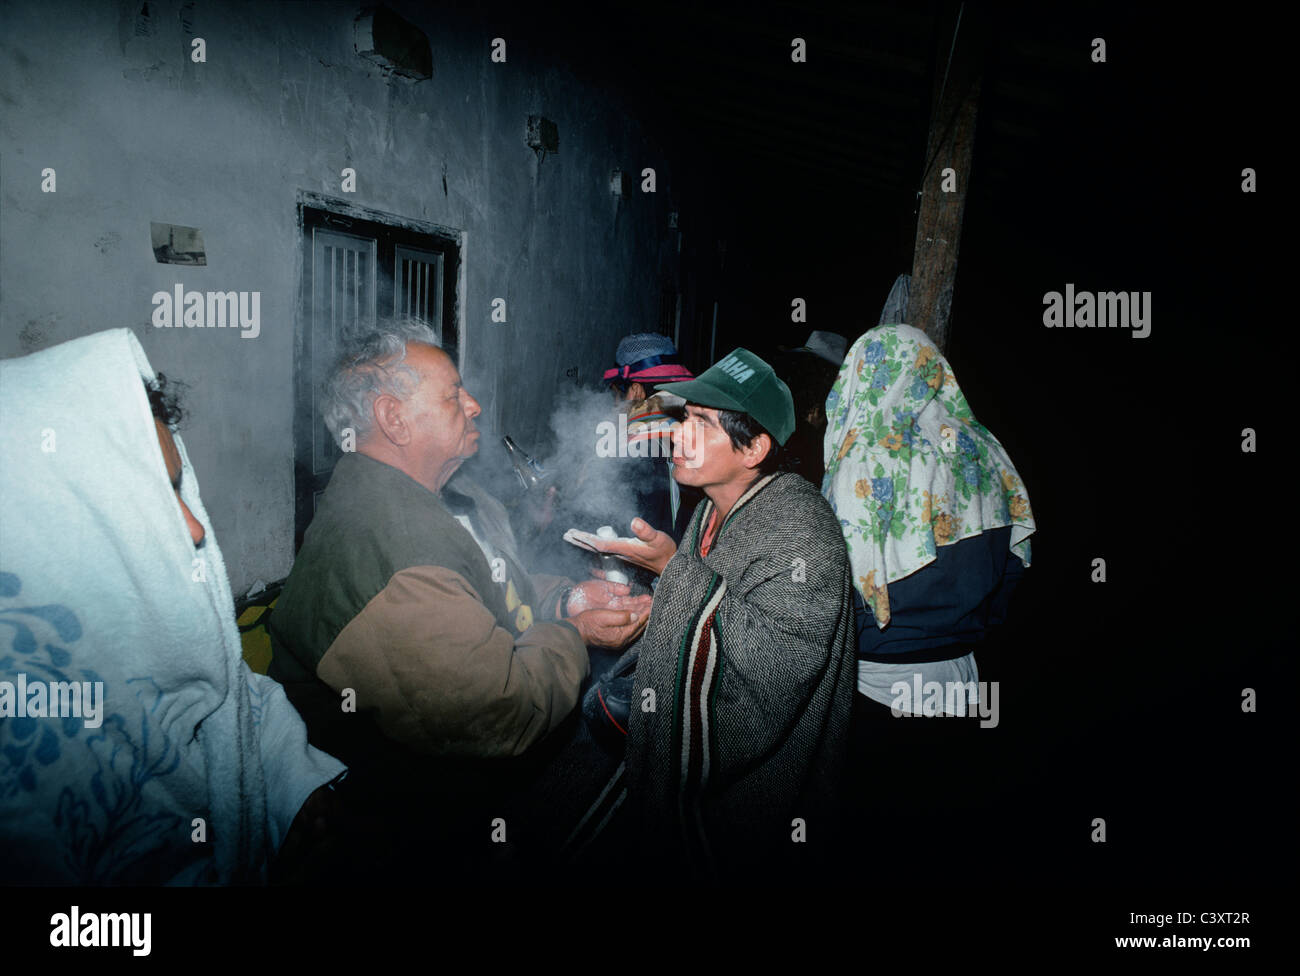 Peruviano guaritore folk (curandero) soffia un mistico polvere bianca nella faccia di un uomo che intendono per purificazione spirituale. Foto Stock